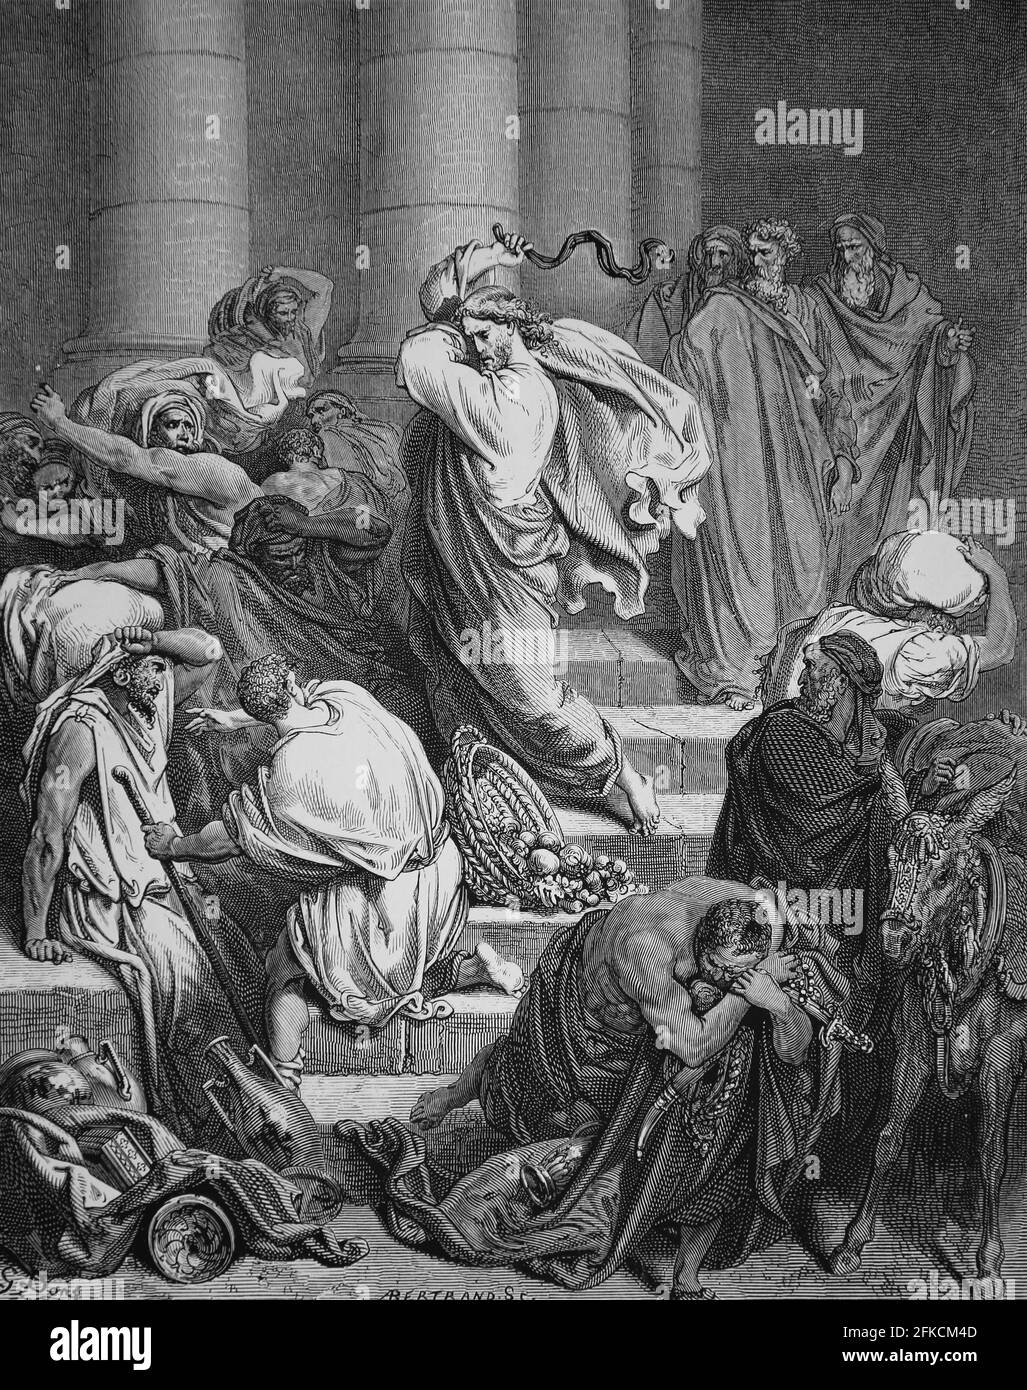 Reinigung des Tempels. Jesus verjagende die Kaufleute und die Geldwechsler aus dem Tempel. (Lukas, 19:46). Gravur. Bibelillustration von Gustave Stockfoto